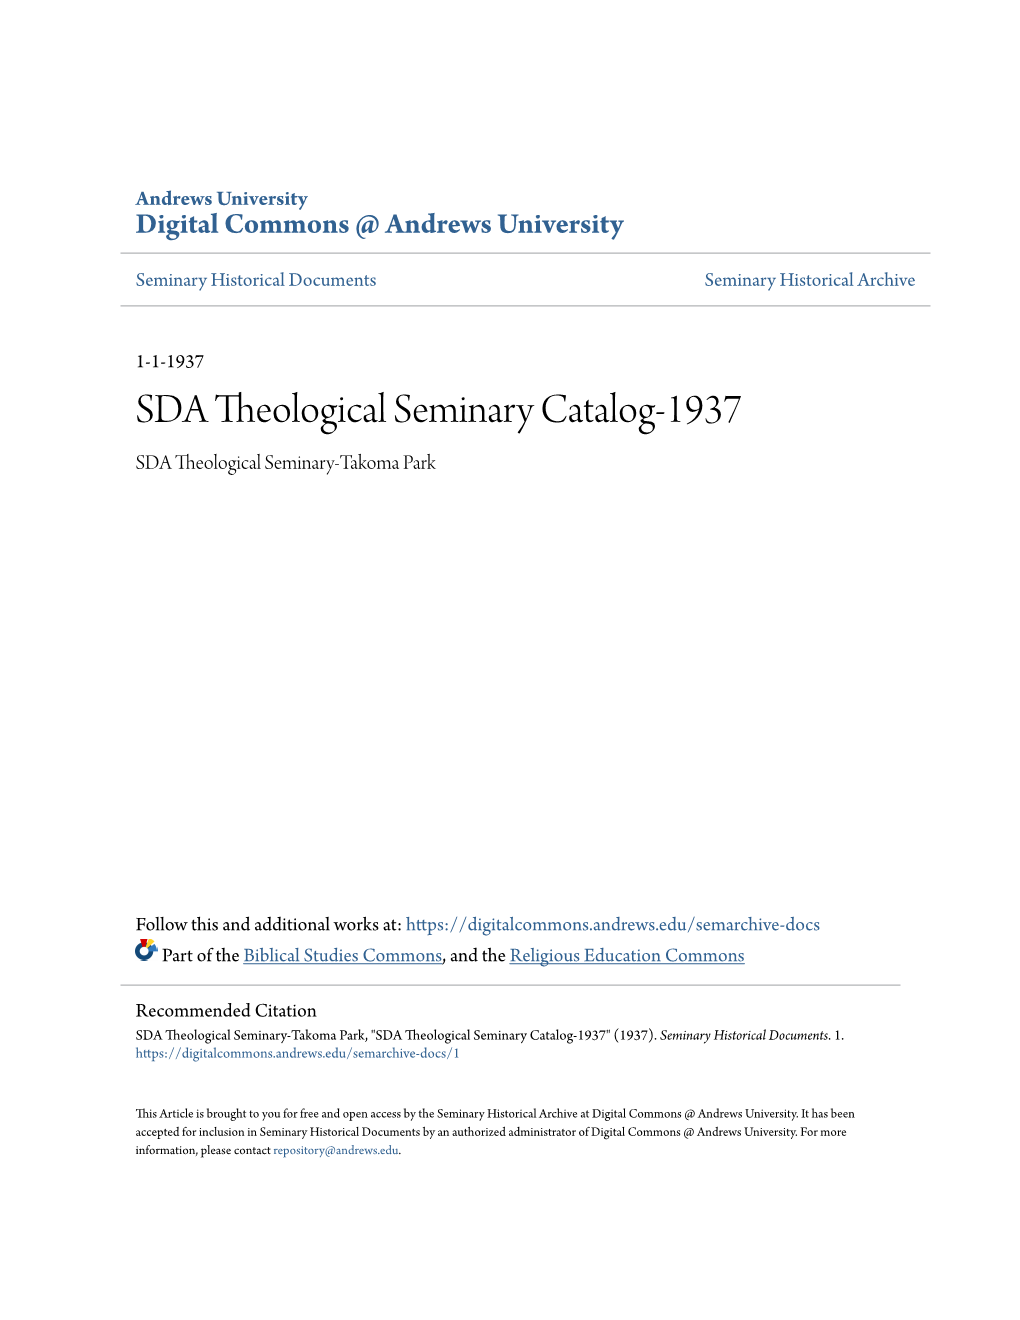 SDA Theological Seminary Catalog-1937 SDA Theological Seminary-Takoma Park